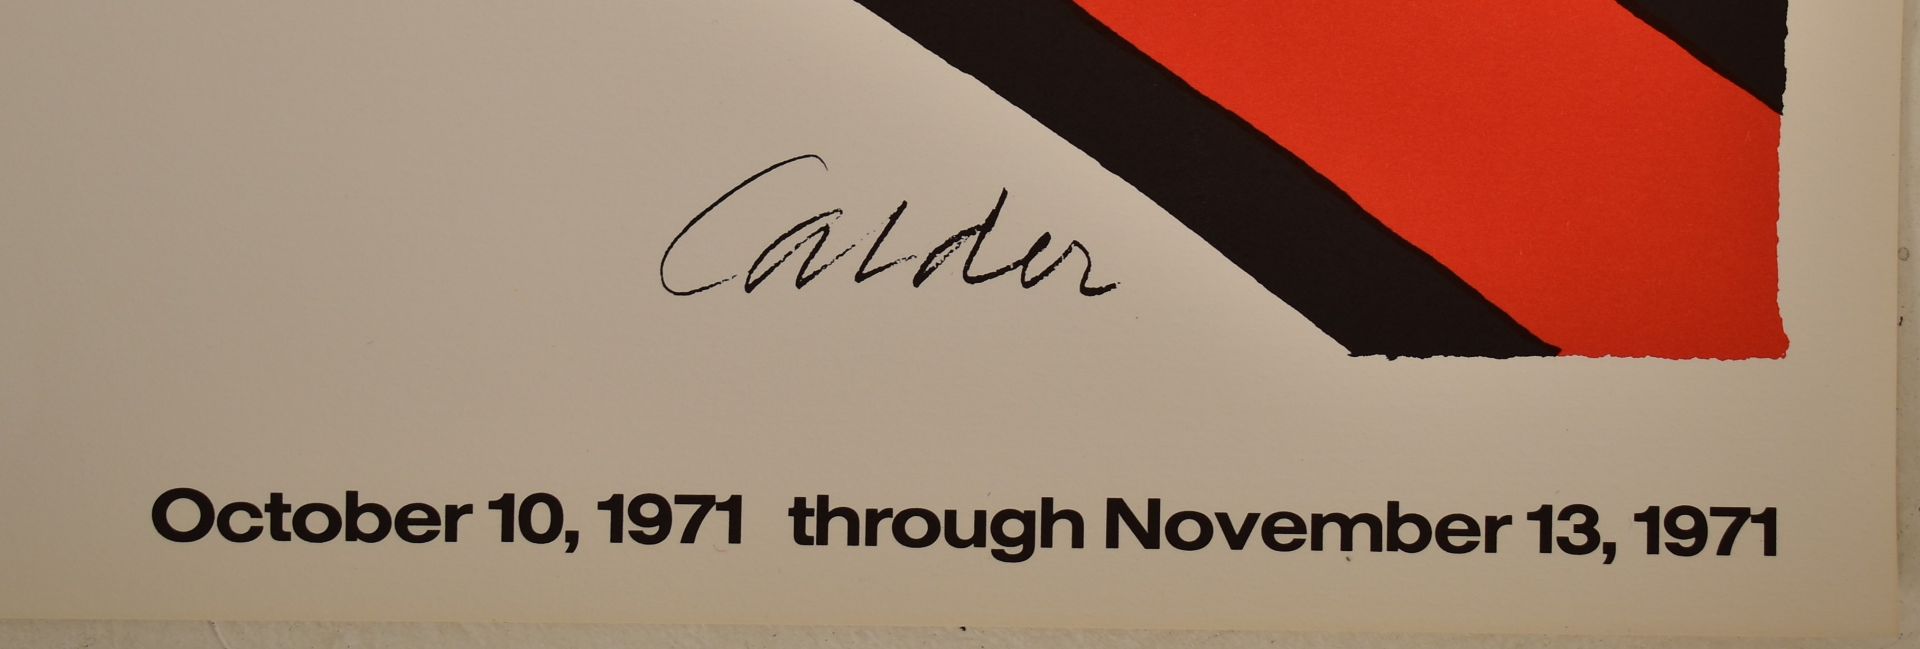 ALEXANDER CALDER (1898-1976) - VINTAGE 1971 EXHIBITION POSTER - Image 2 of 4